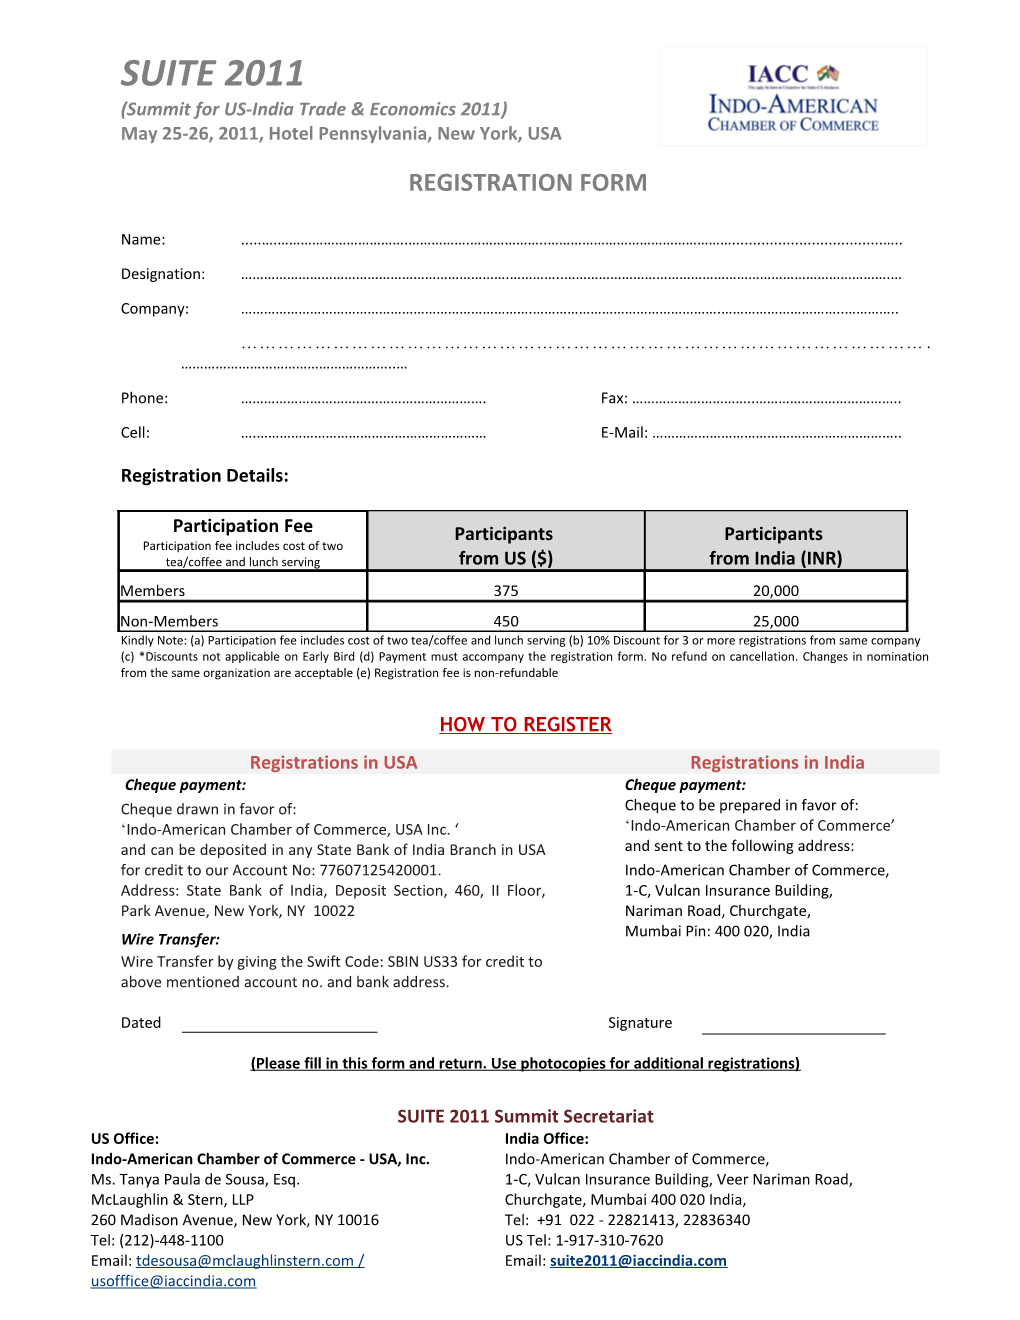 Registration Details